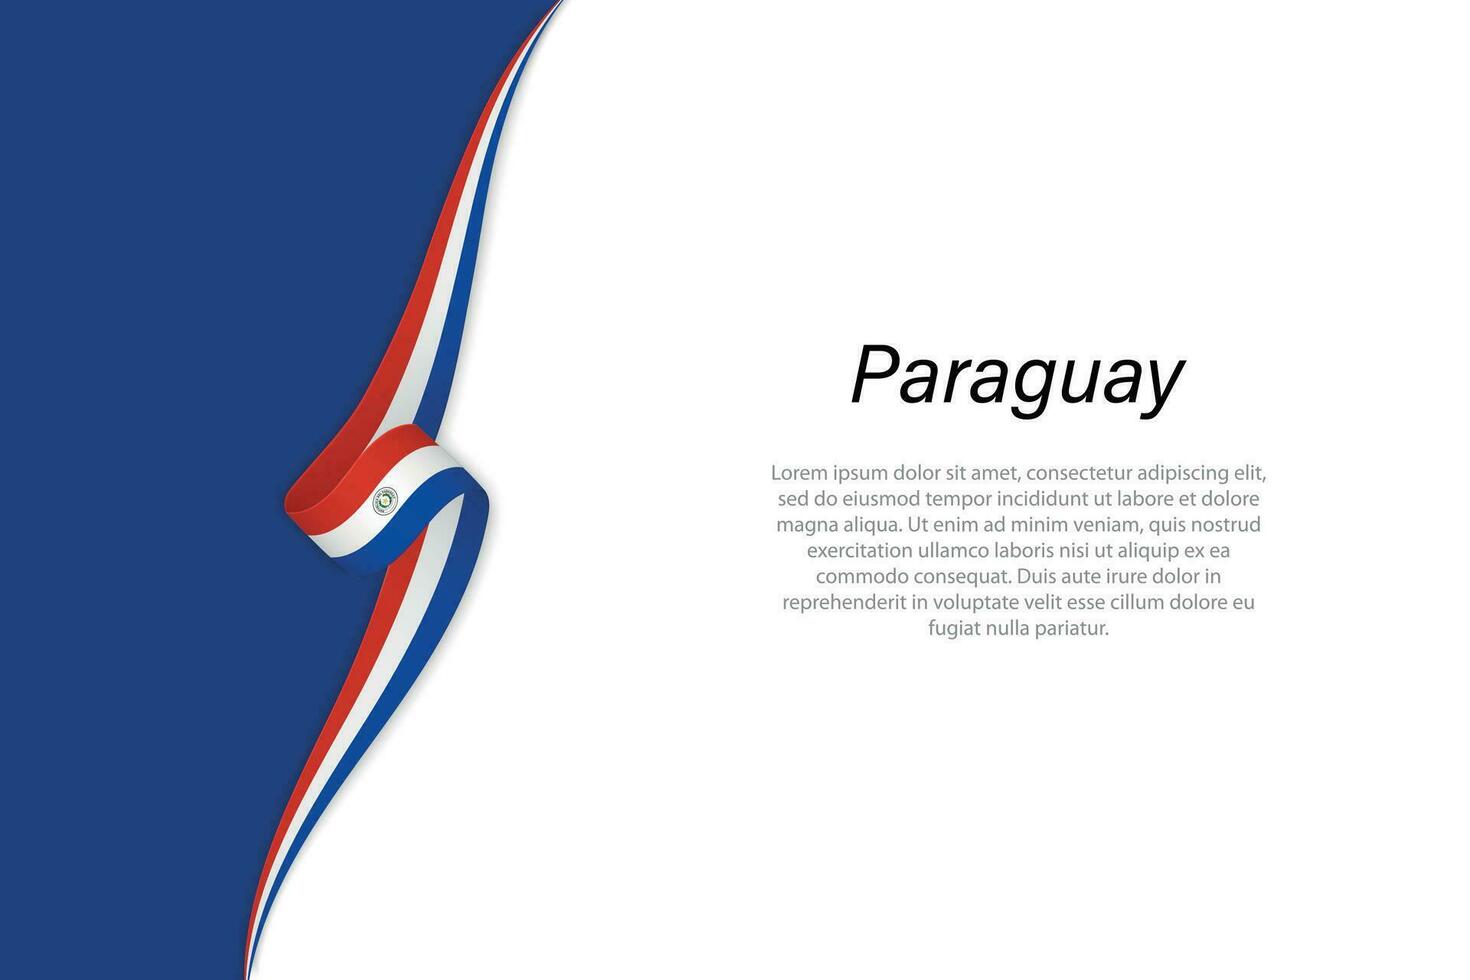 ola bandera de paraguay con copyspace antecedentes. vector